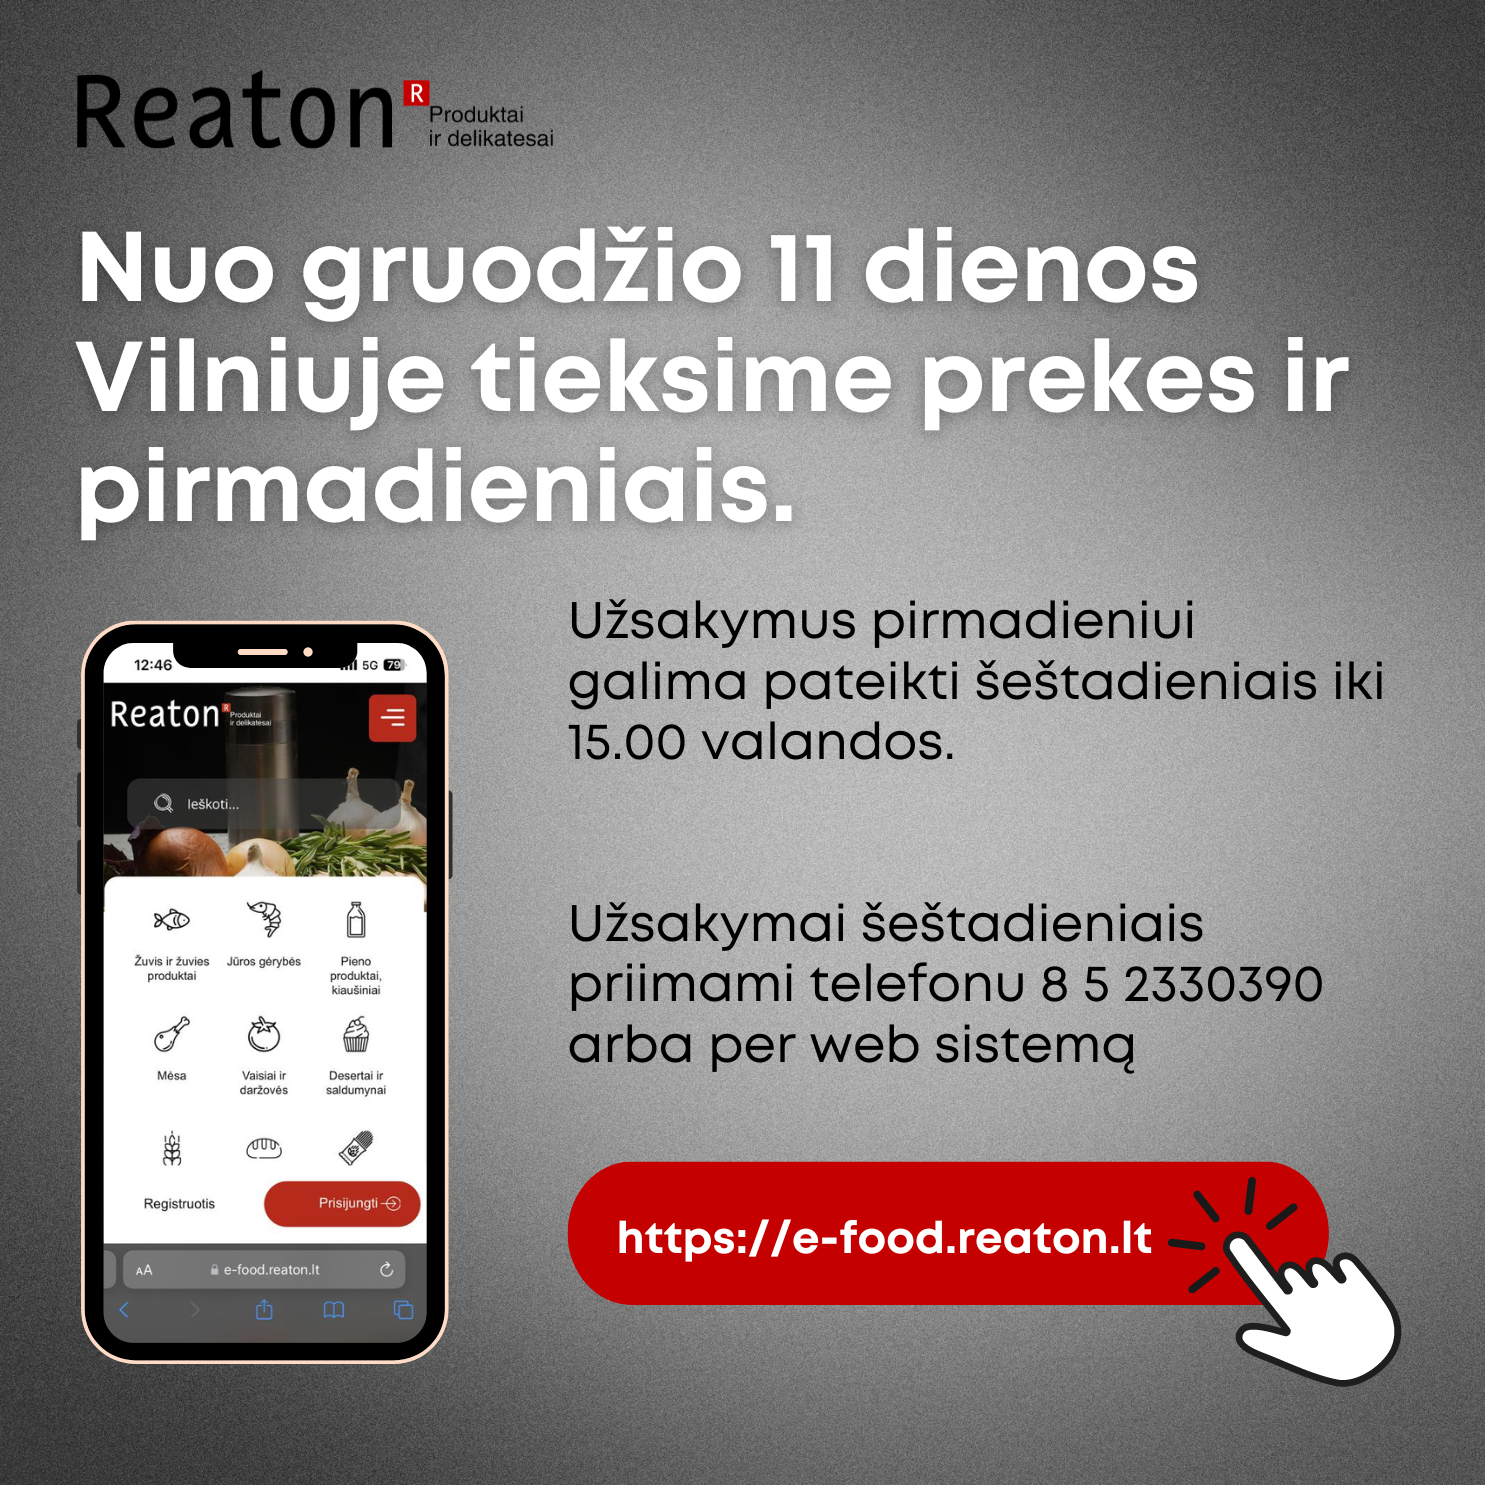 Klientų patogumui Reaton patobulino prekių pristatymo grafiką Vilniuje.